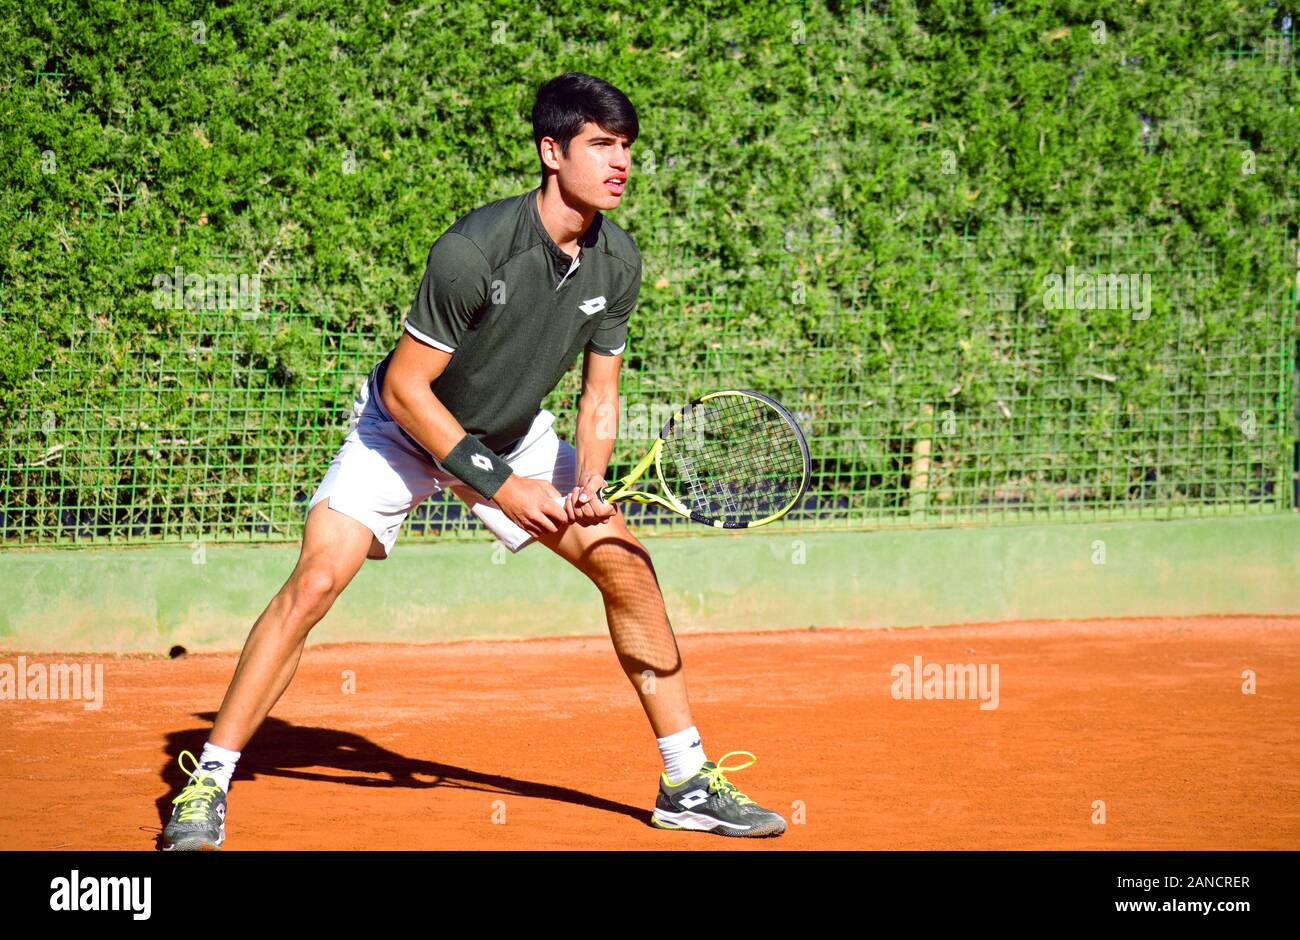 Murcia, Spagna, 26 dicembre 2019: Carlos Alcaraz Garfía un tennista spagnolo che si prepara ad una partita di tennis. Foto Stock